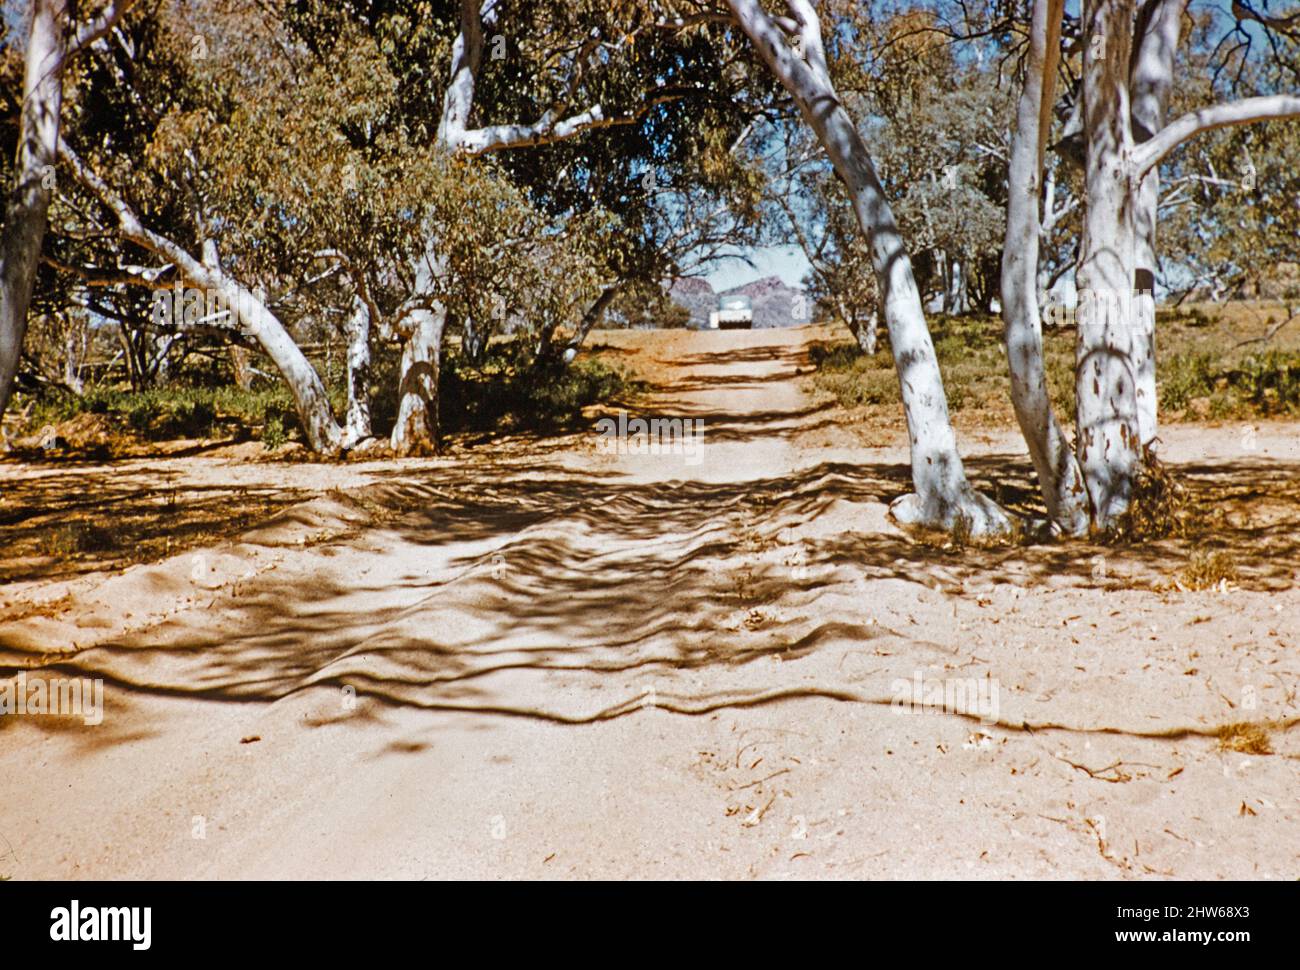 Melbourne Grammar School Expedition, Northern Territory, Australien im Jahr 1956 Tour-Bus von Len Tuit in der Ferne auf sandigen nicht gemacht Straße Spur betrieben Stockfoto